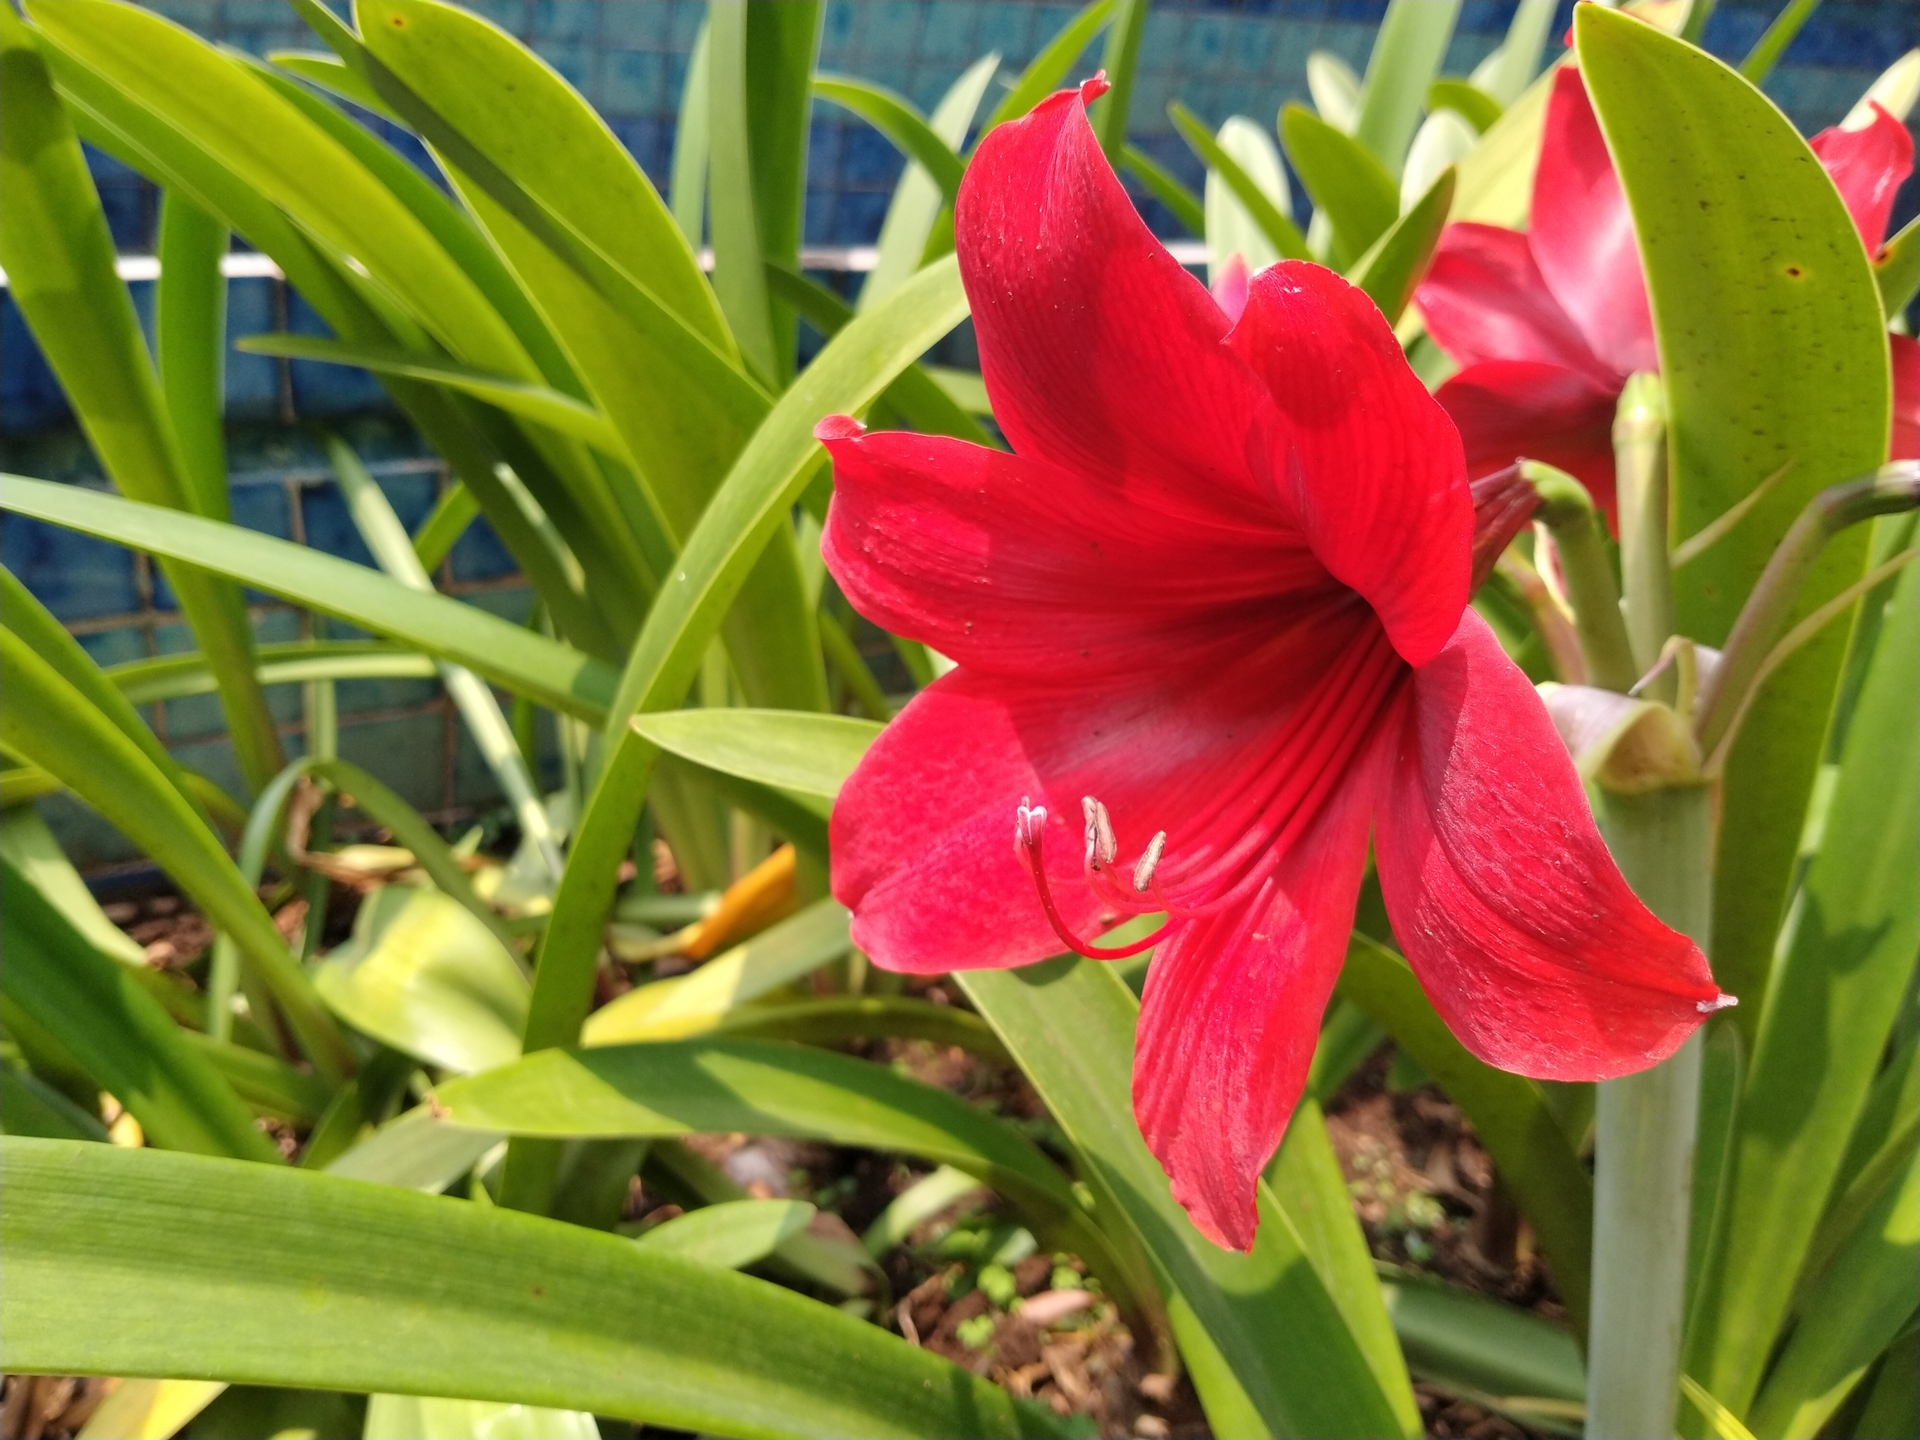 Kwiat ten ma intensywny, nasycony kolor, który przyciąga uwagę i dodaje energii. Widać na nim charakterystyczne, długie płatki kwiatu, które układają się wokół centralnego punktu, tworząc niepowtarzalny kształt. Na zdjęciu widać także delikatne, zielone liście amarylisa, które idealnie kontrastują z czerwonym kwiatem. Kwiat amarylisa na zdjęciu wygląda na zdrowy i dobrze zadbaną roślinę, co może stanowić inspirację dla osób, które chcą uprawiać tę roślinę w swoim domu lub ogrodzie.